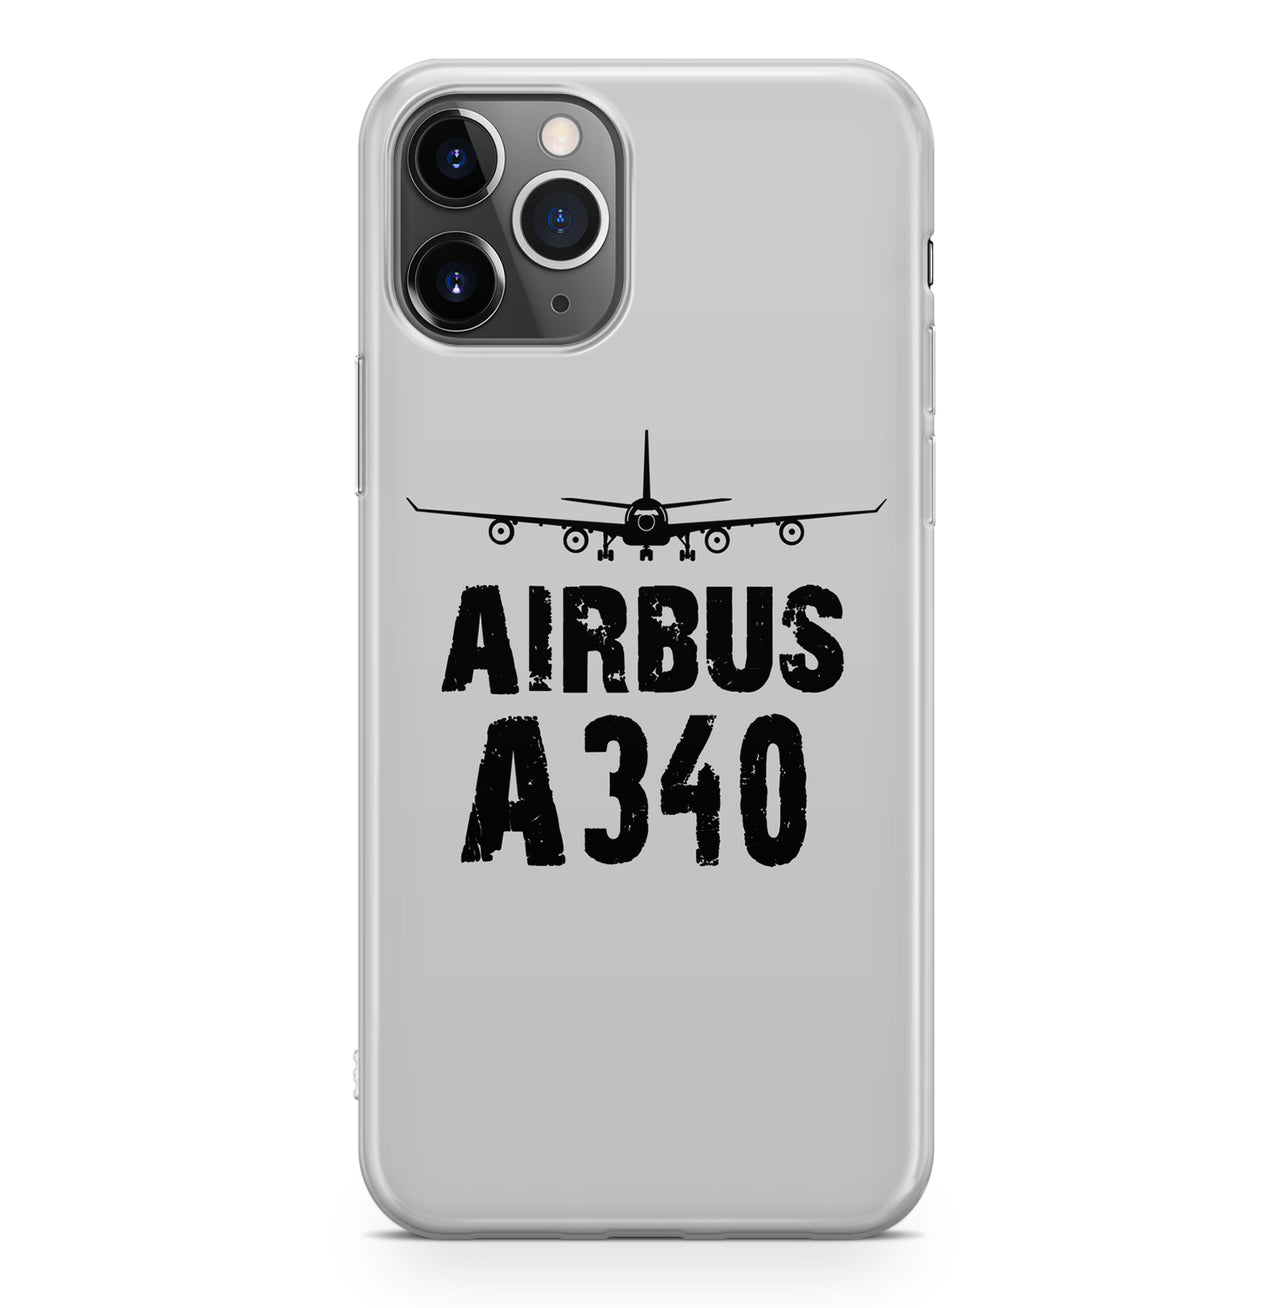 Airbus A340 & Plane Designed iPhone Cases